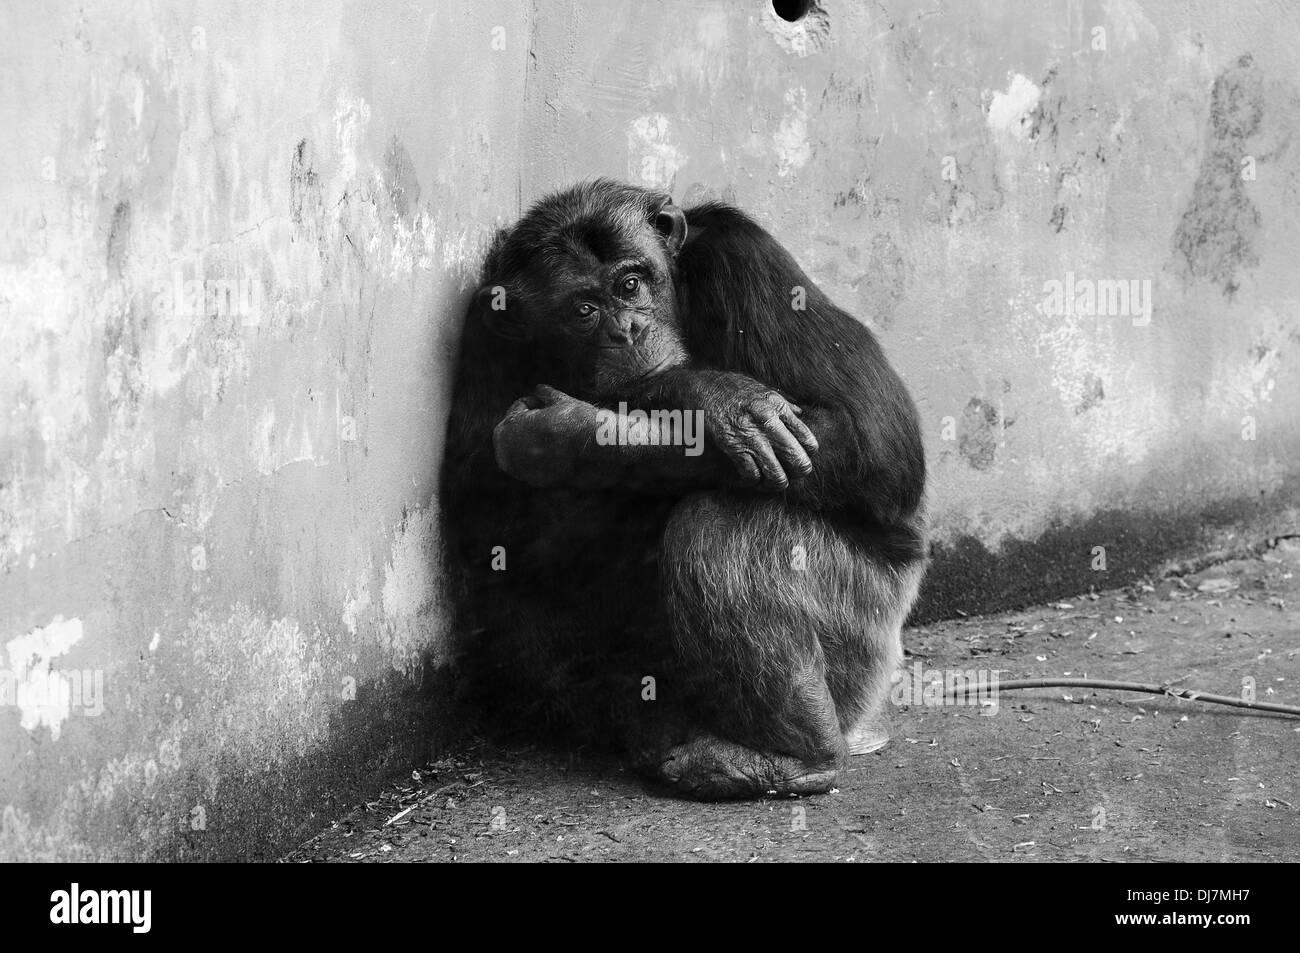 Portrait de chimpanzé commun horizontal, Pan troglodytes, en captivité dans un zoo. La Cantabrie. L'Espagne. Banque D'Images